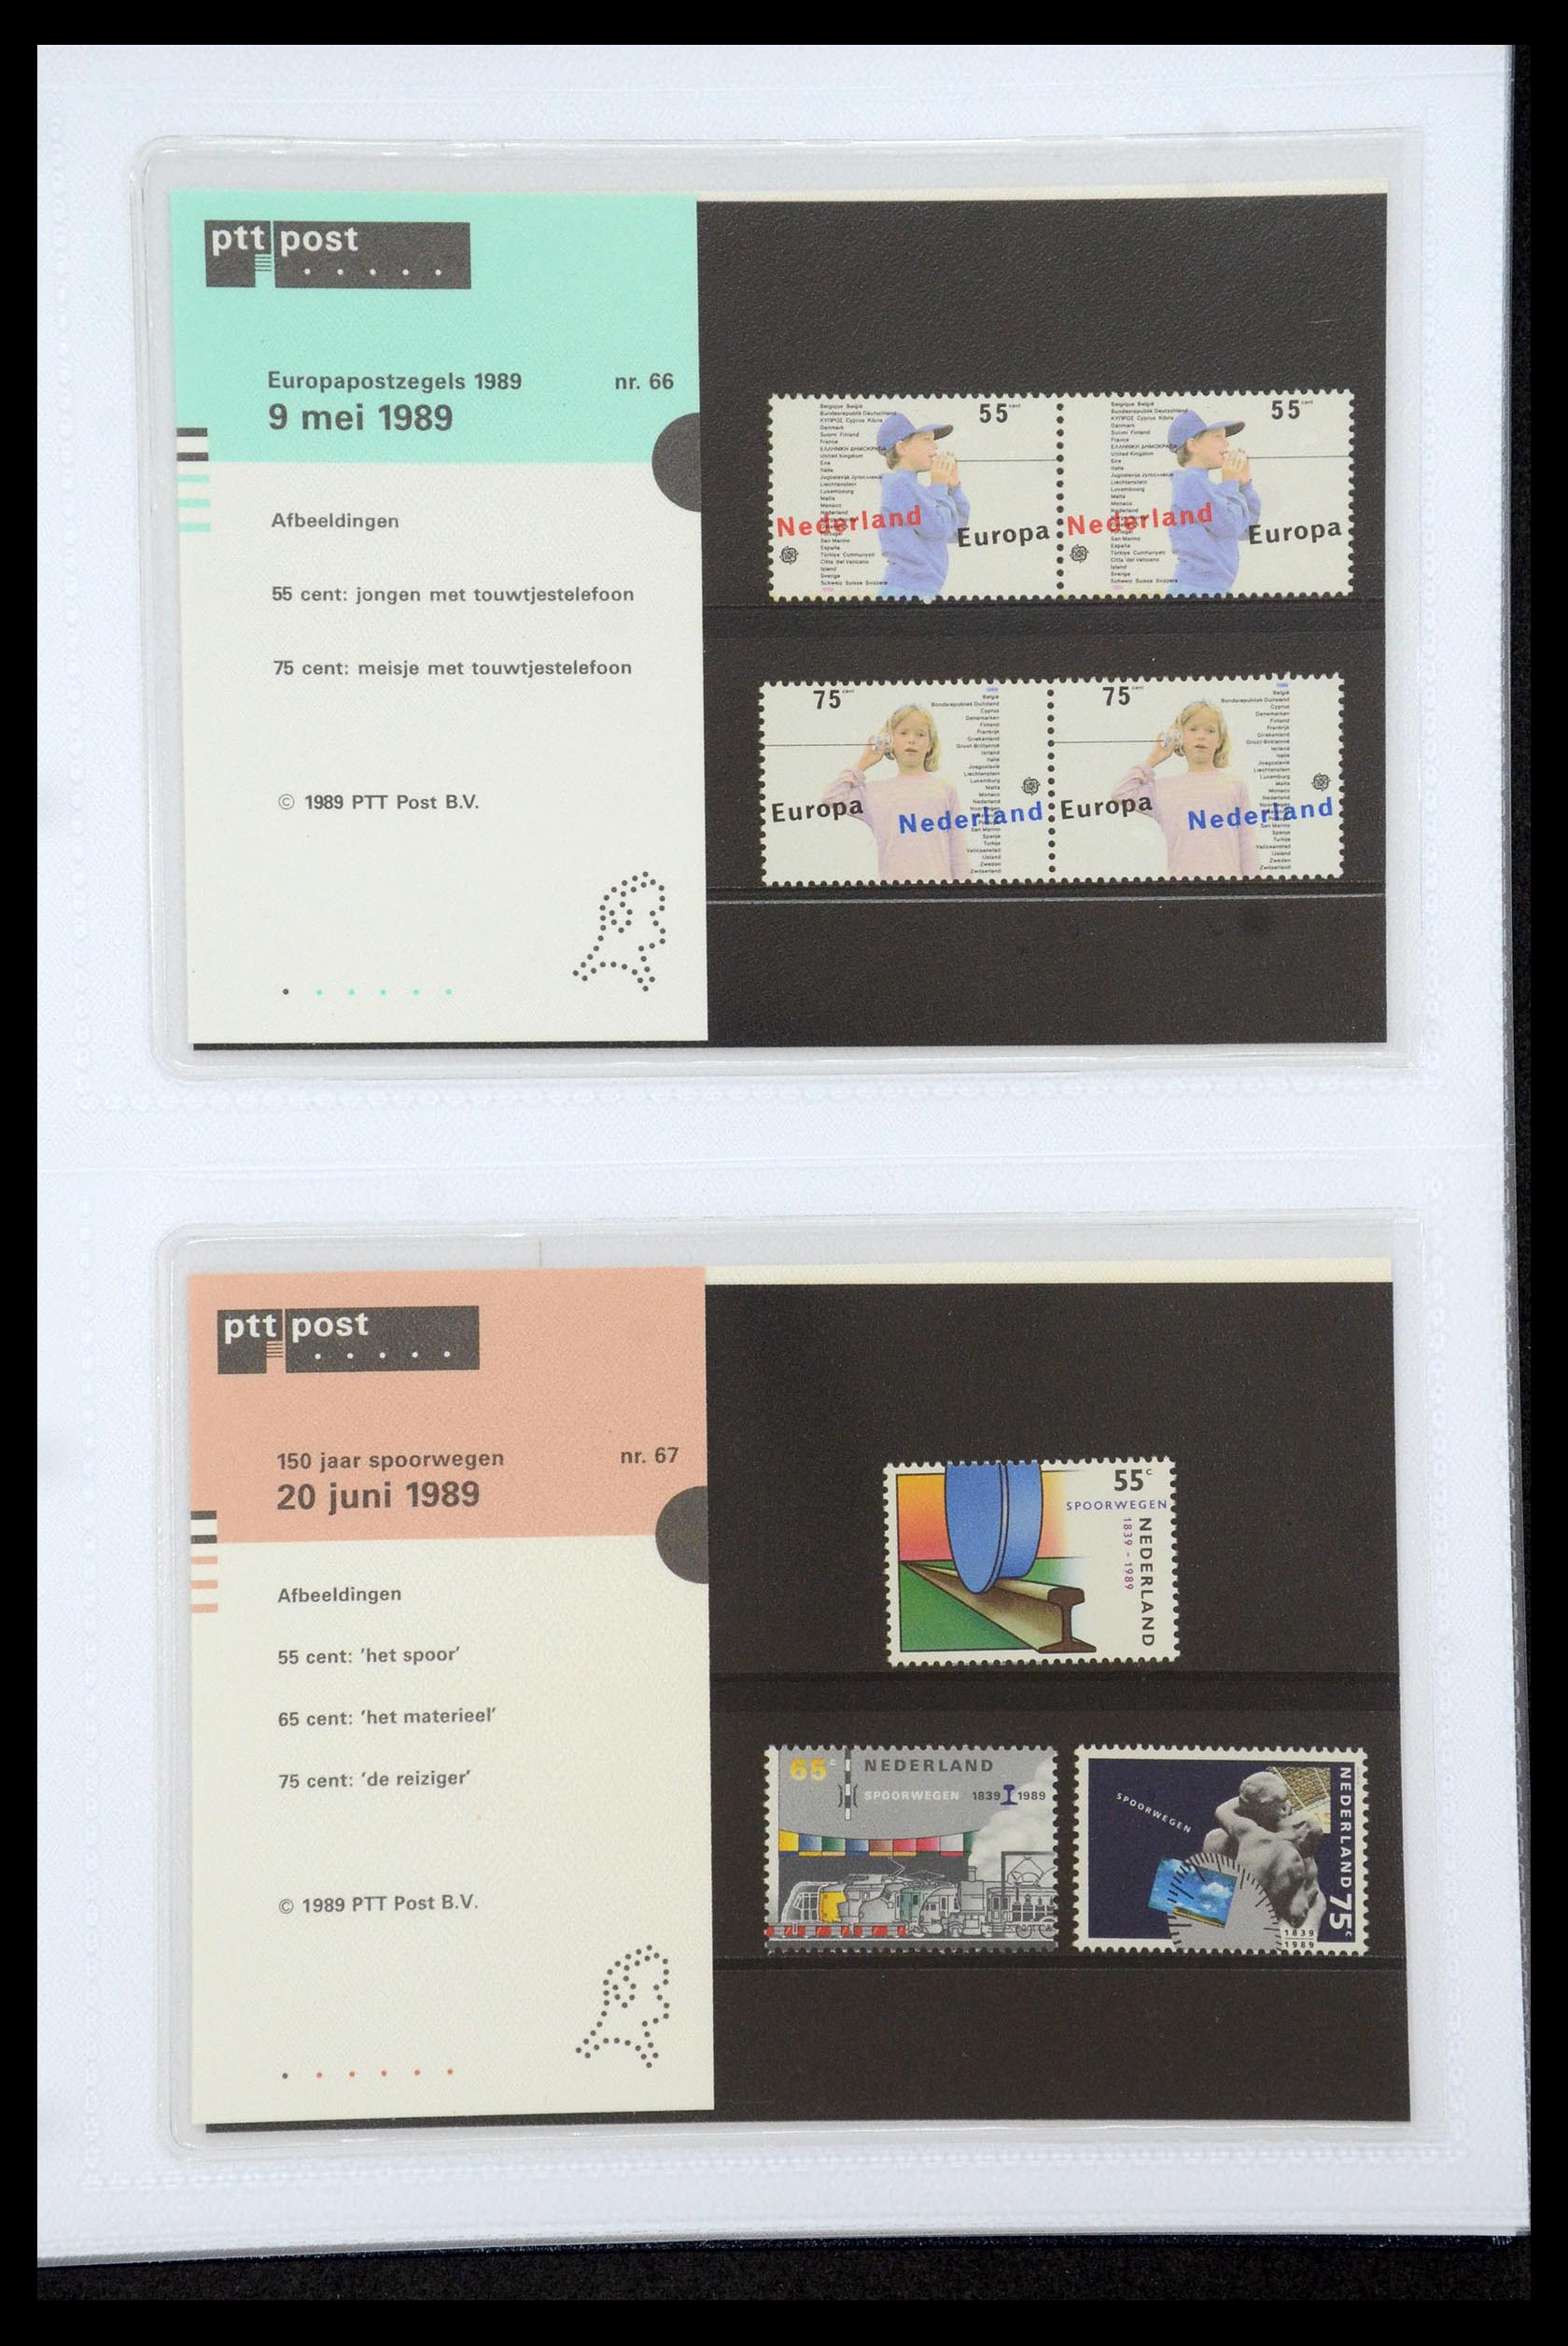 35947 034 - Stamp Collection 35947 Netherlands PTT presentation packs 1982-2019!